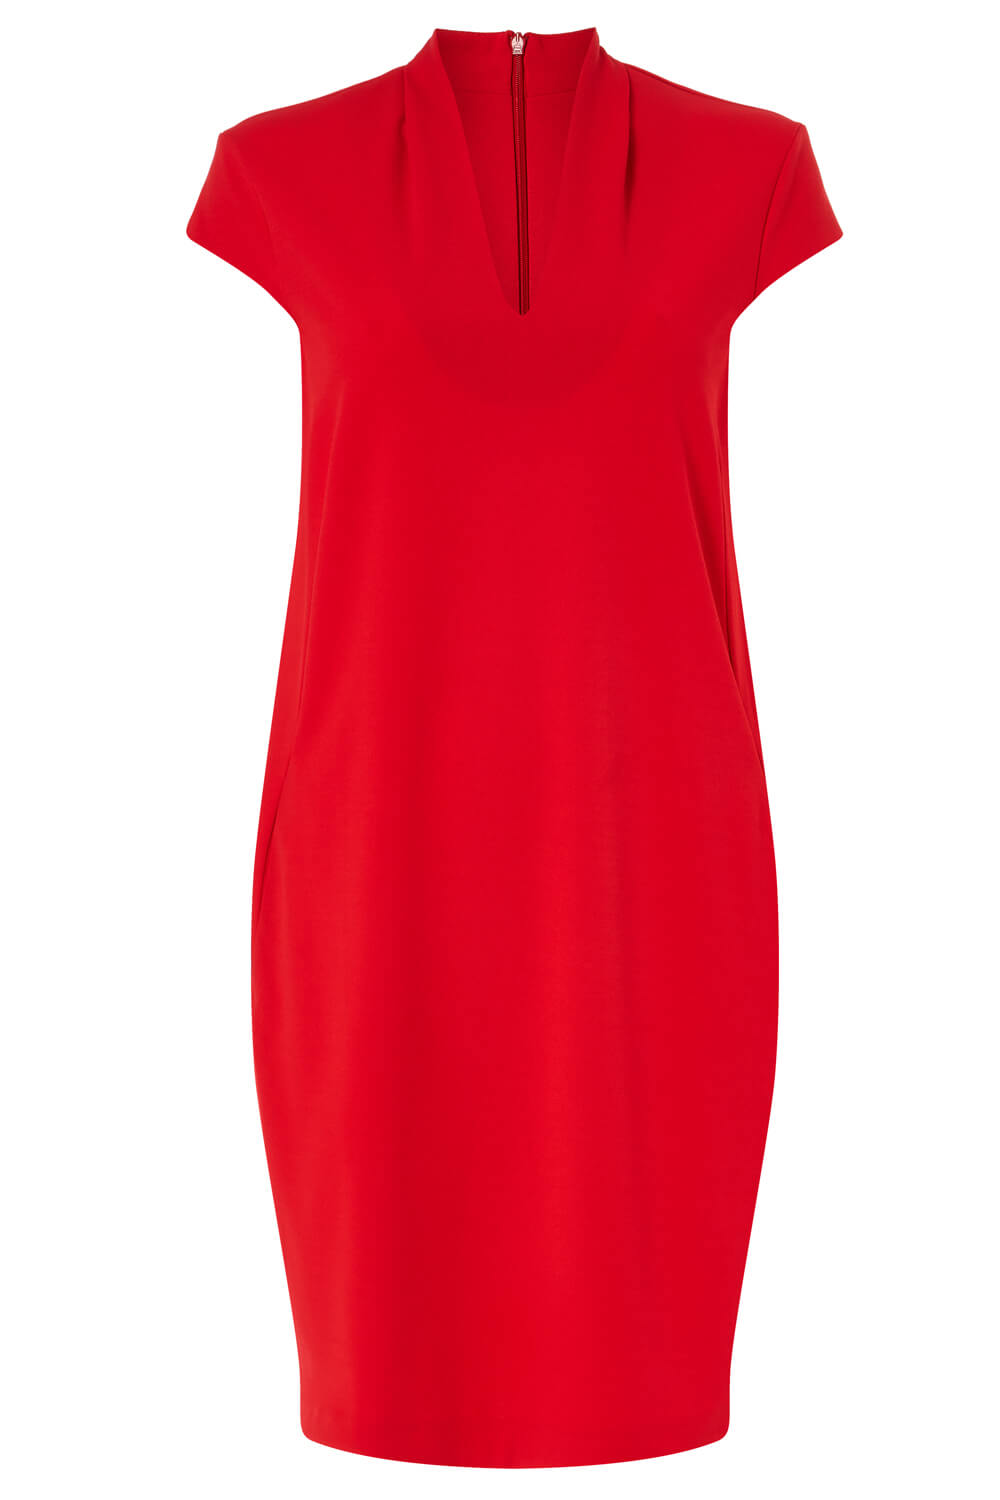 Red V Neck Cocoon Dress, Image 5 of 5